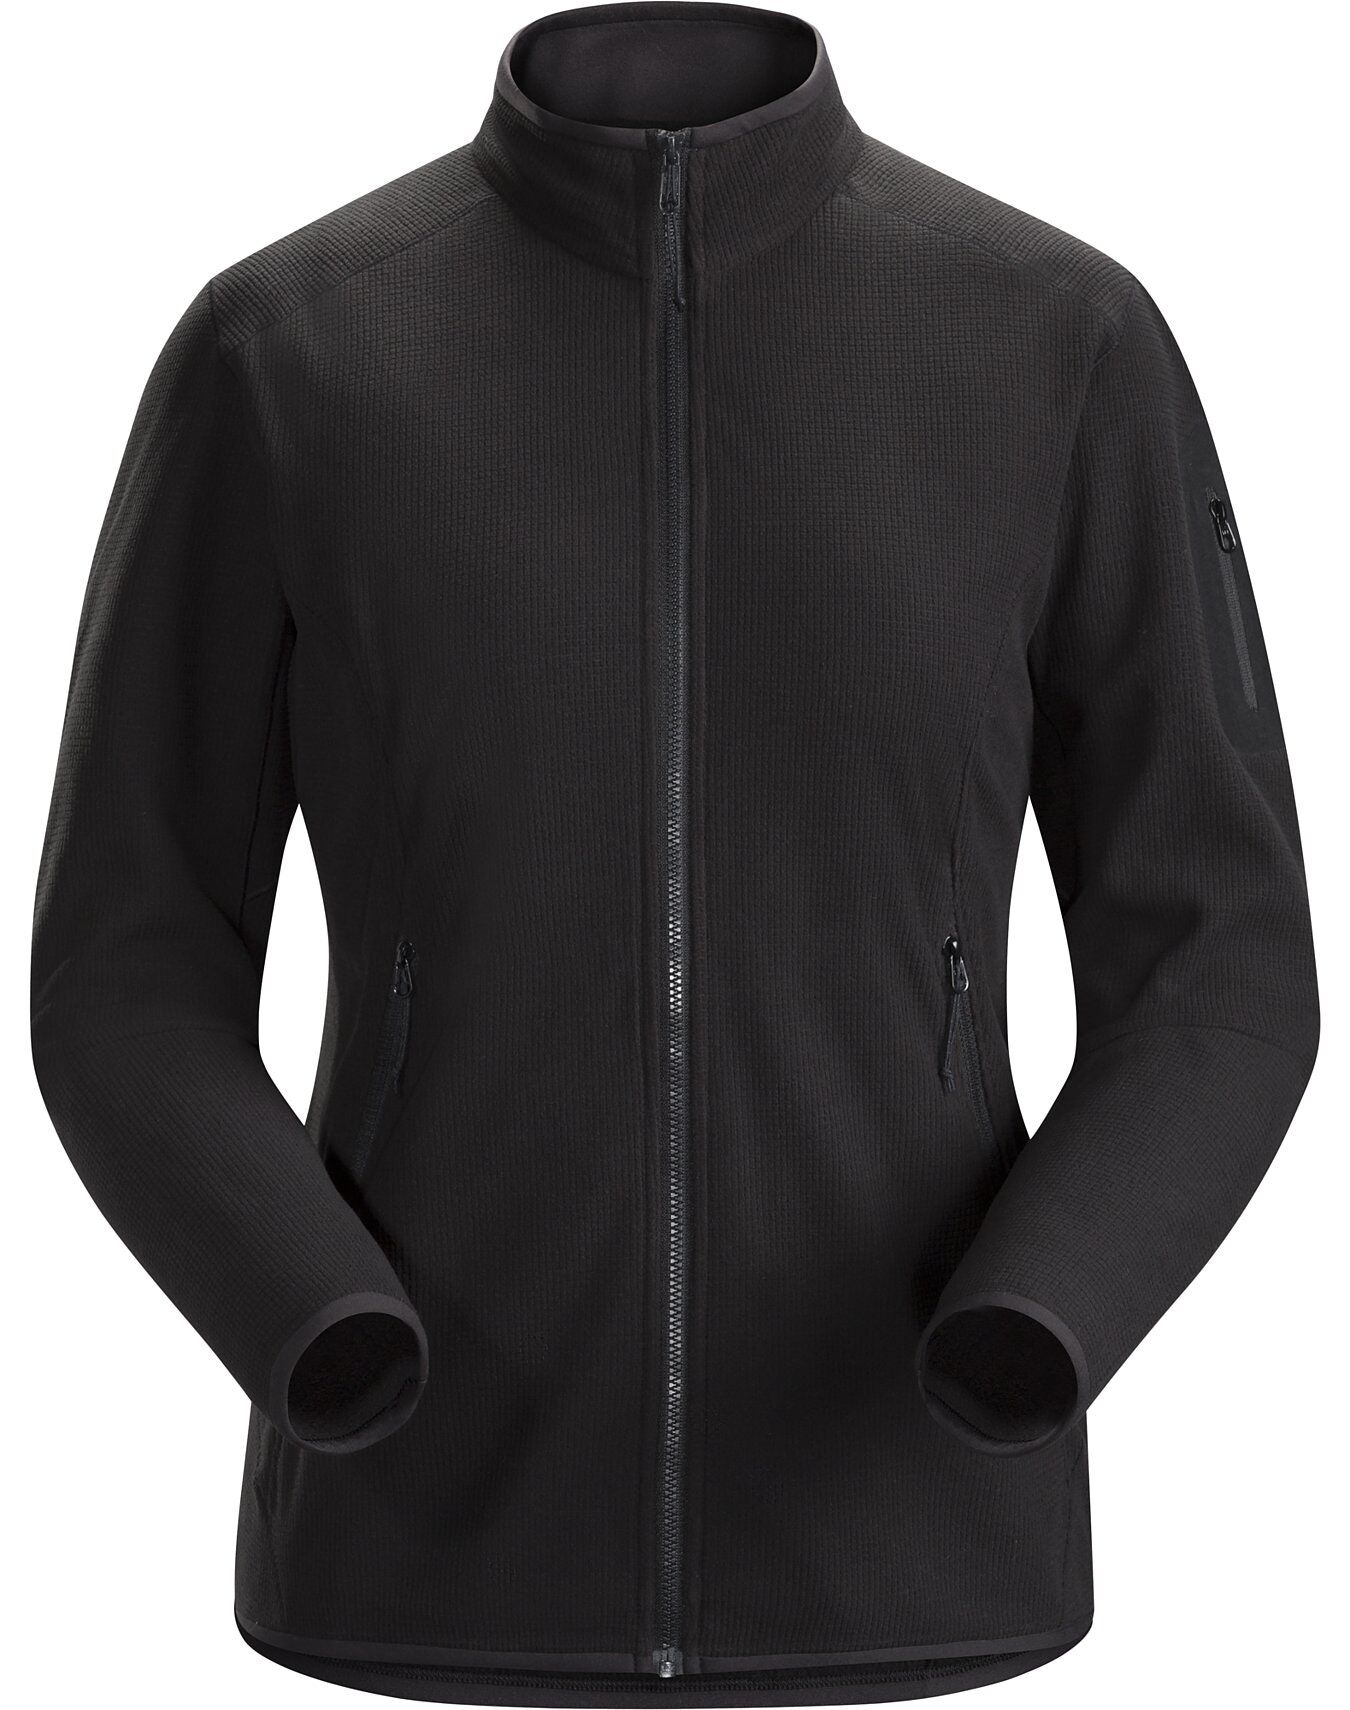 Arc'teryx Delta LT Jacket - Fleece jacket - Women's